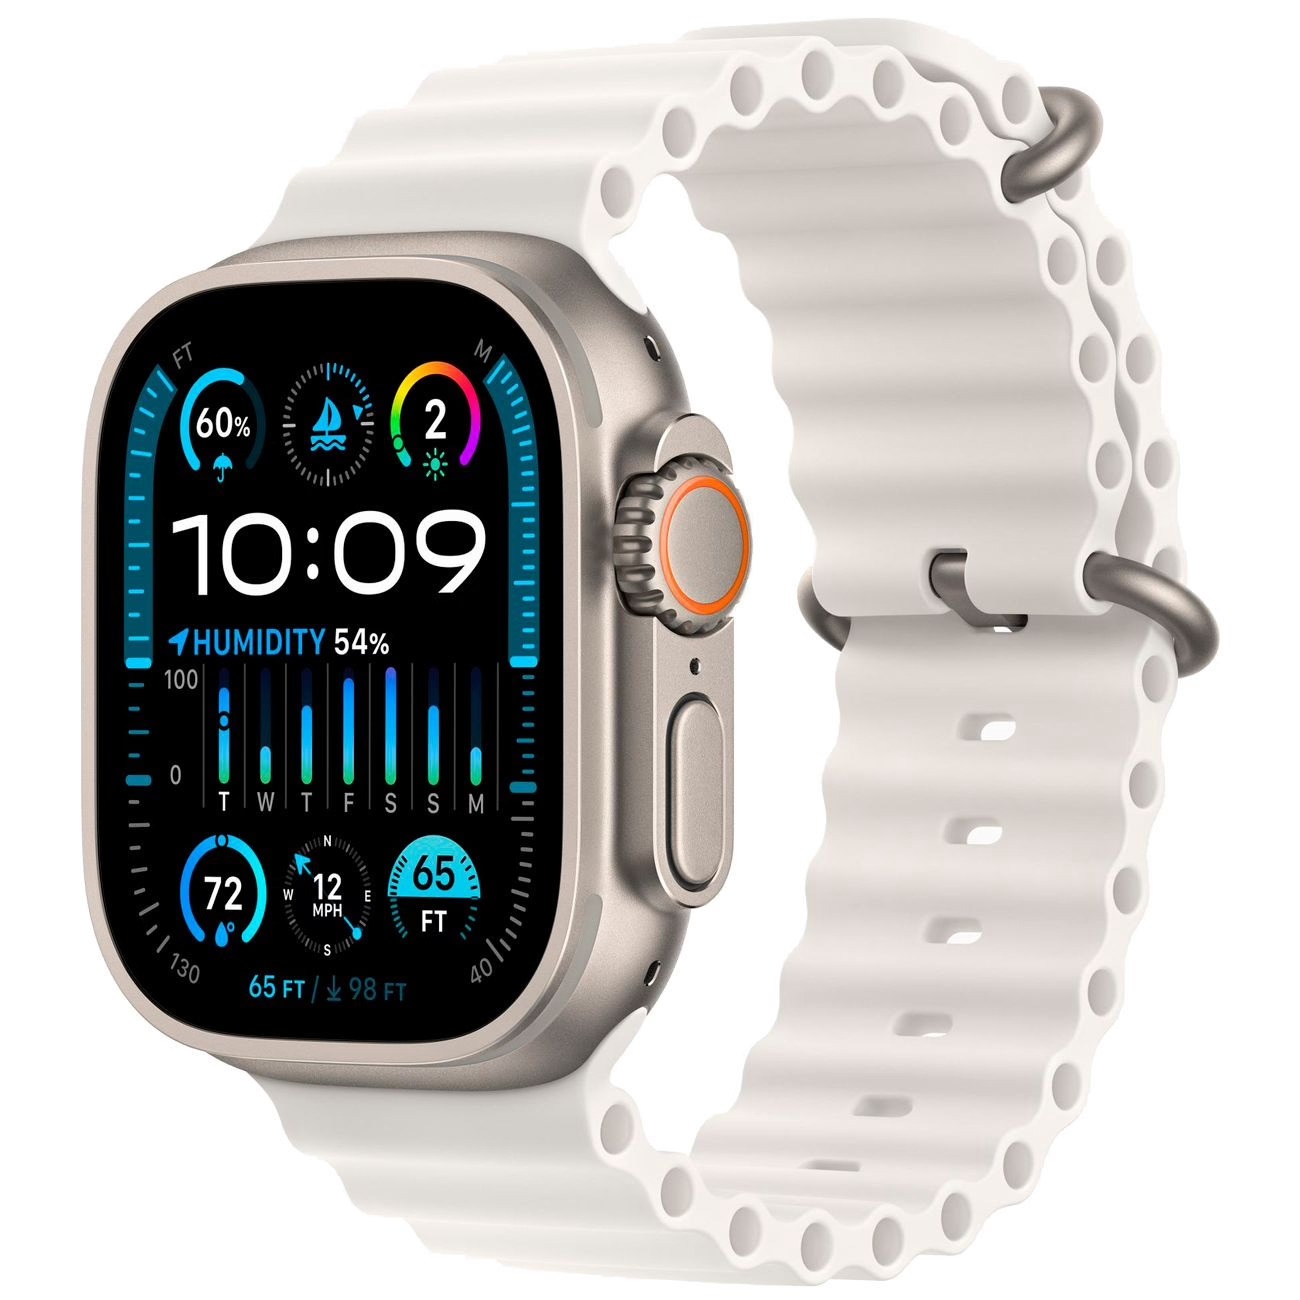 Купить смарт-часы apple watch ultra 2 ocean band white Apple Watch Ultra 2 в официальном магазине Apple, Samsung, Xiaomi. iPixel.ru Купить, заказ, кредит, рассрочка, отзывы,  характеристики, цена,  фотографии, в подарок.